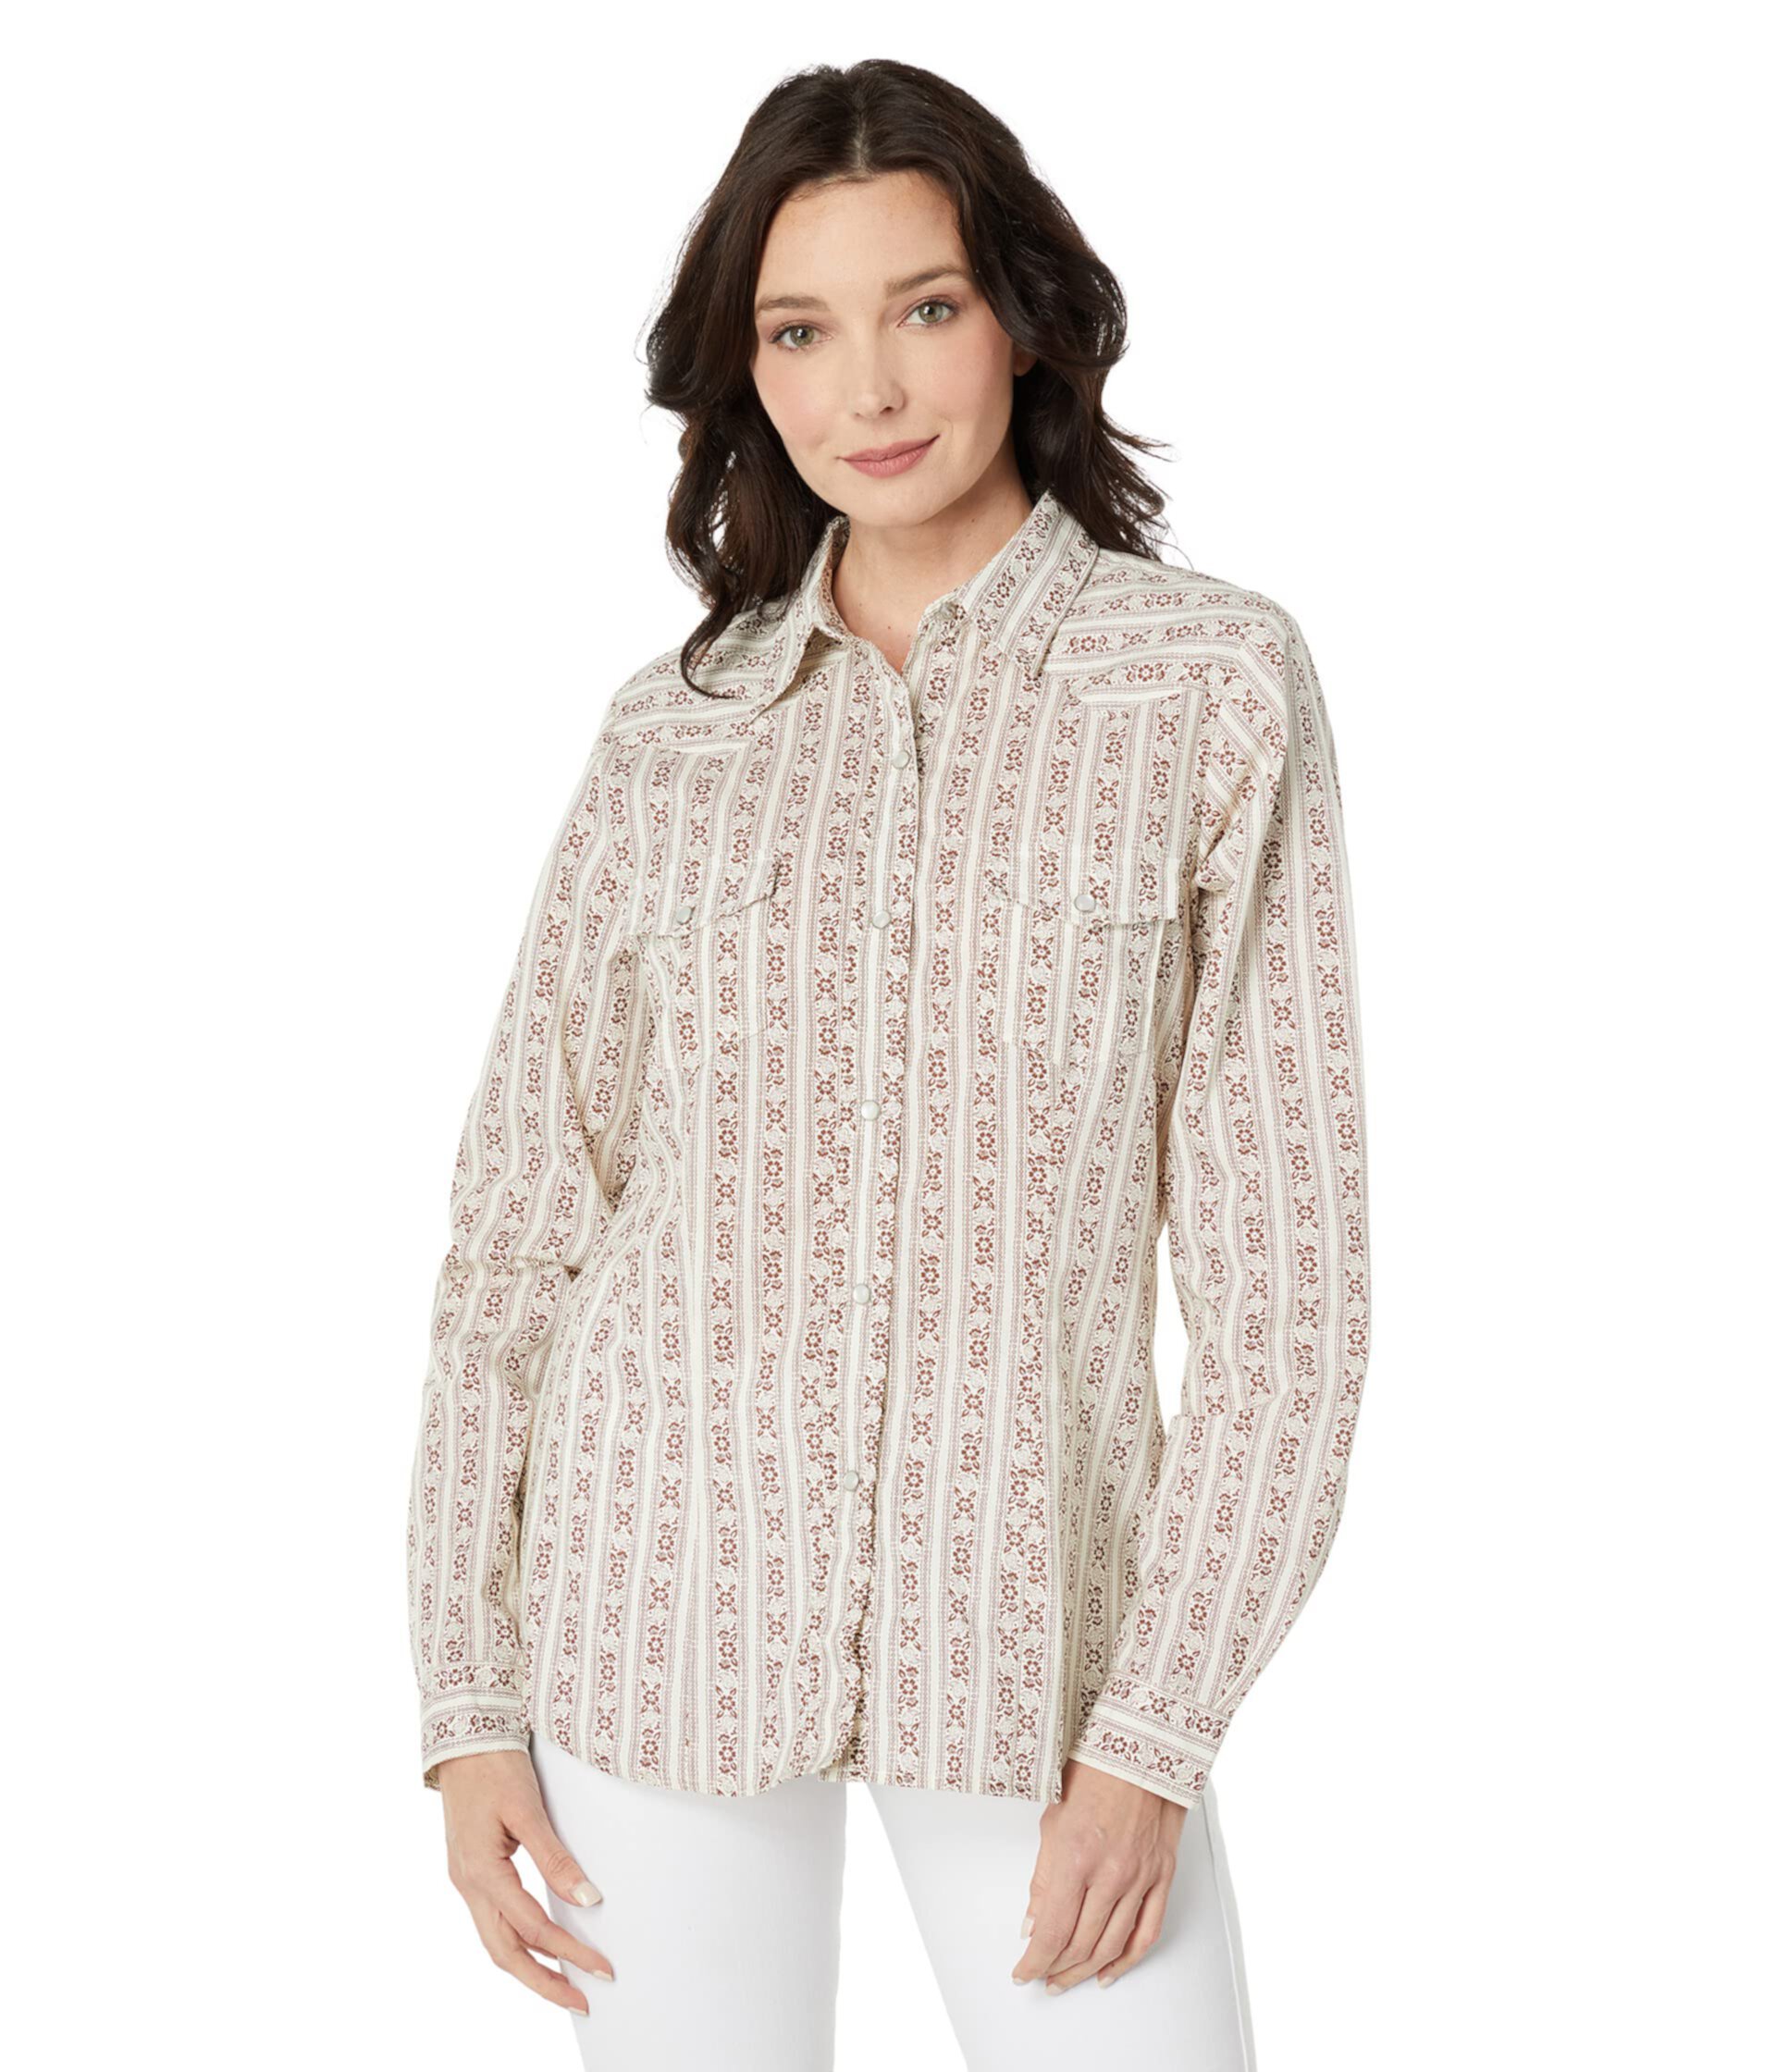 Хлопковая/полиэфирная кремово-коричневая полосатая блуза в стиле вестерн с застежками на кнопках Roper